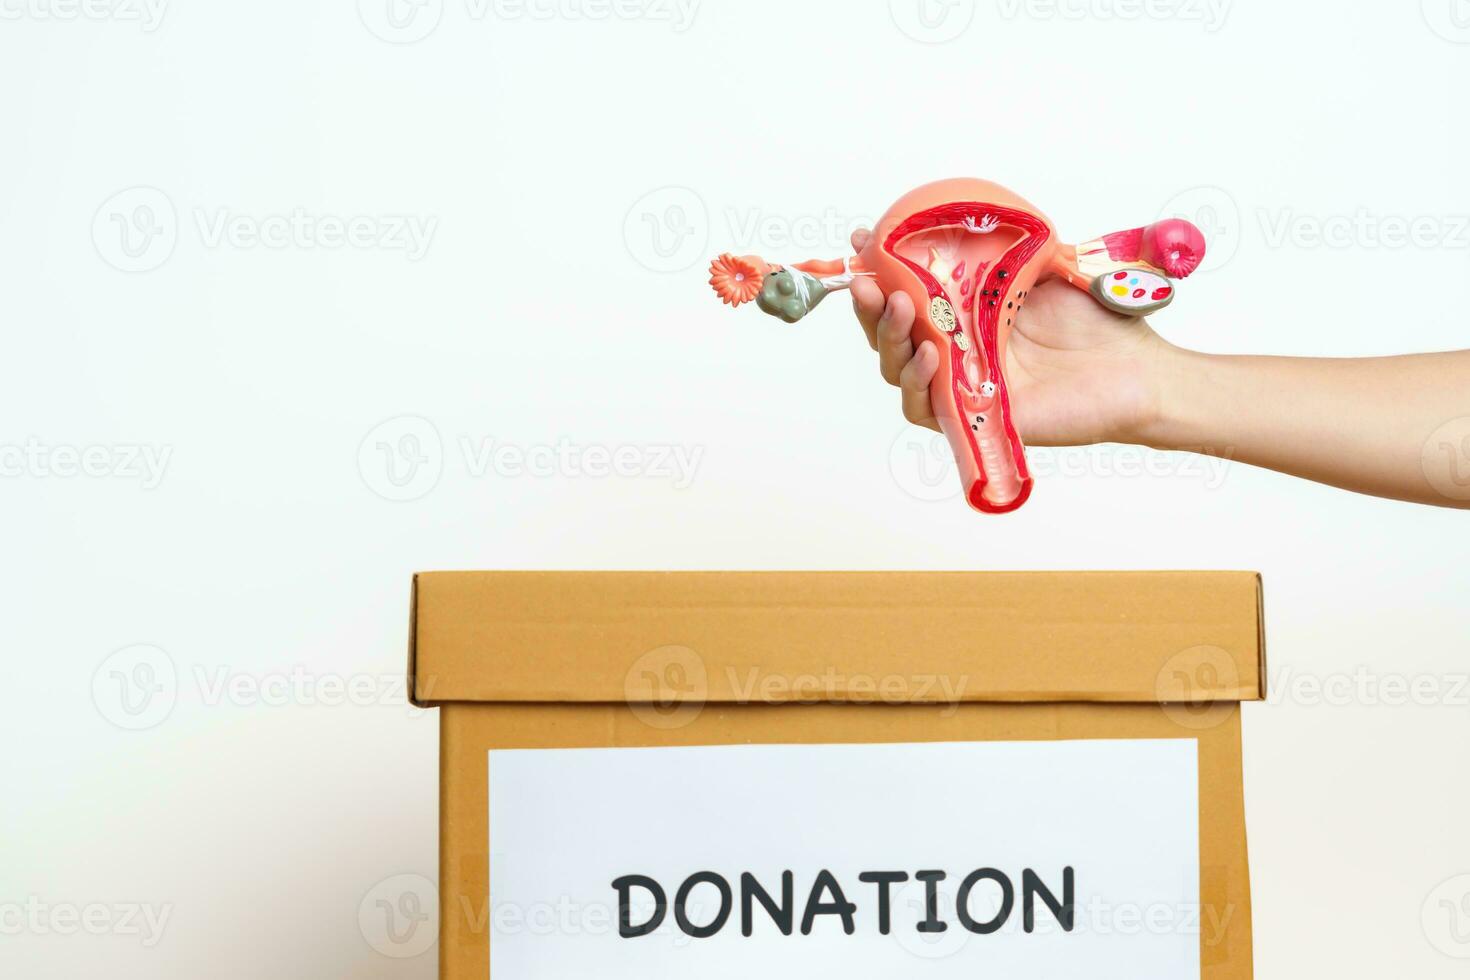 organ donation, välgörenhet, volontär, ger begrepp. hand innehav livmoder och äggstockar modell in i donera låda för Stöd äggstockar och cervical cancer, endometrios, uterin myom, reproduktiv systemet foto